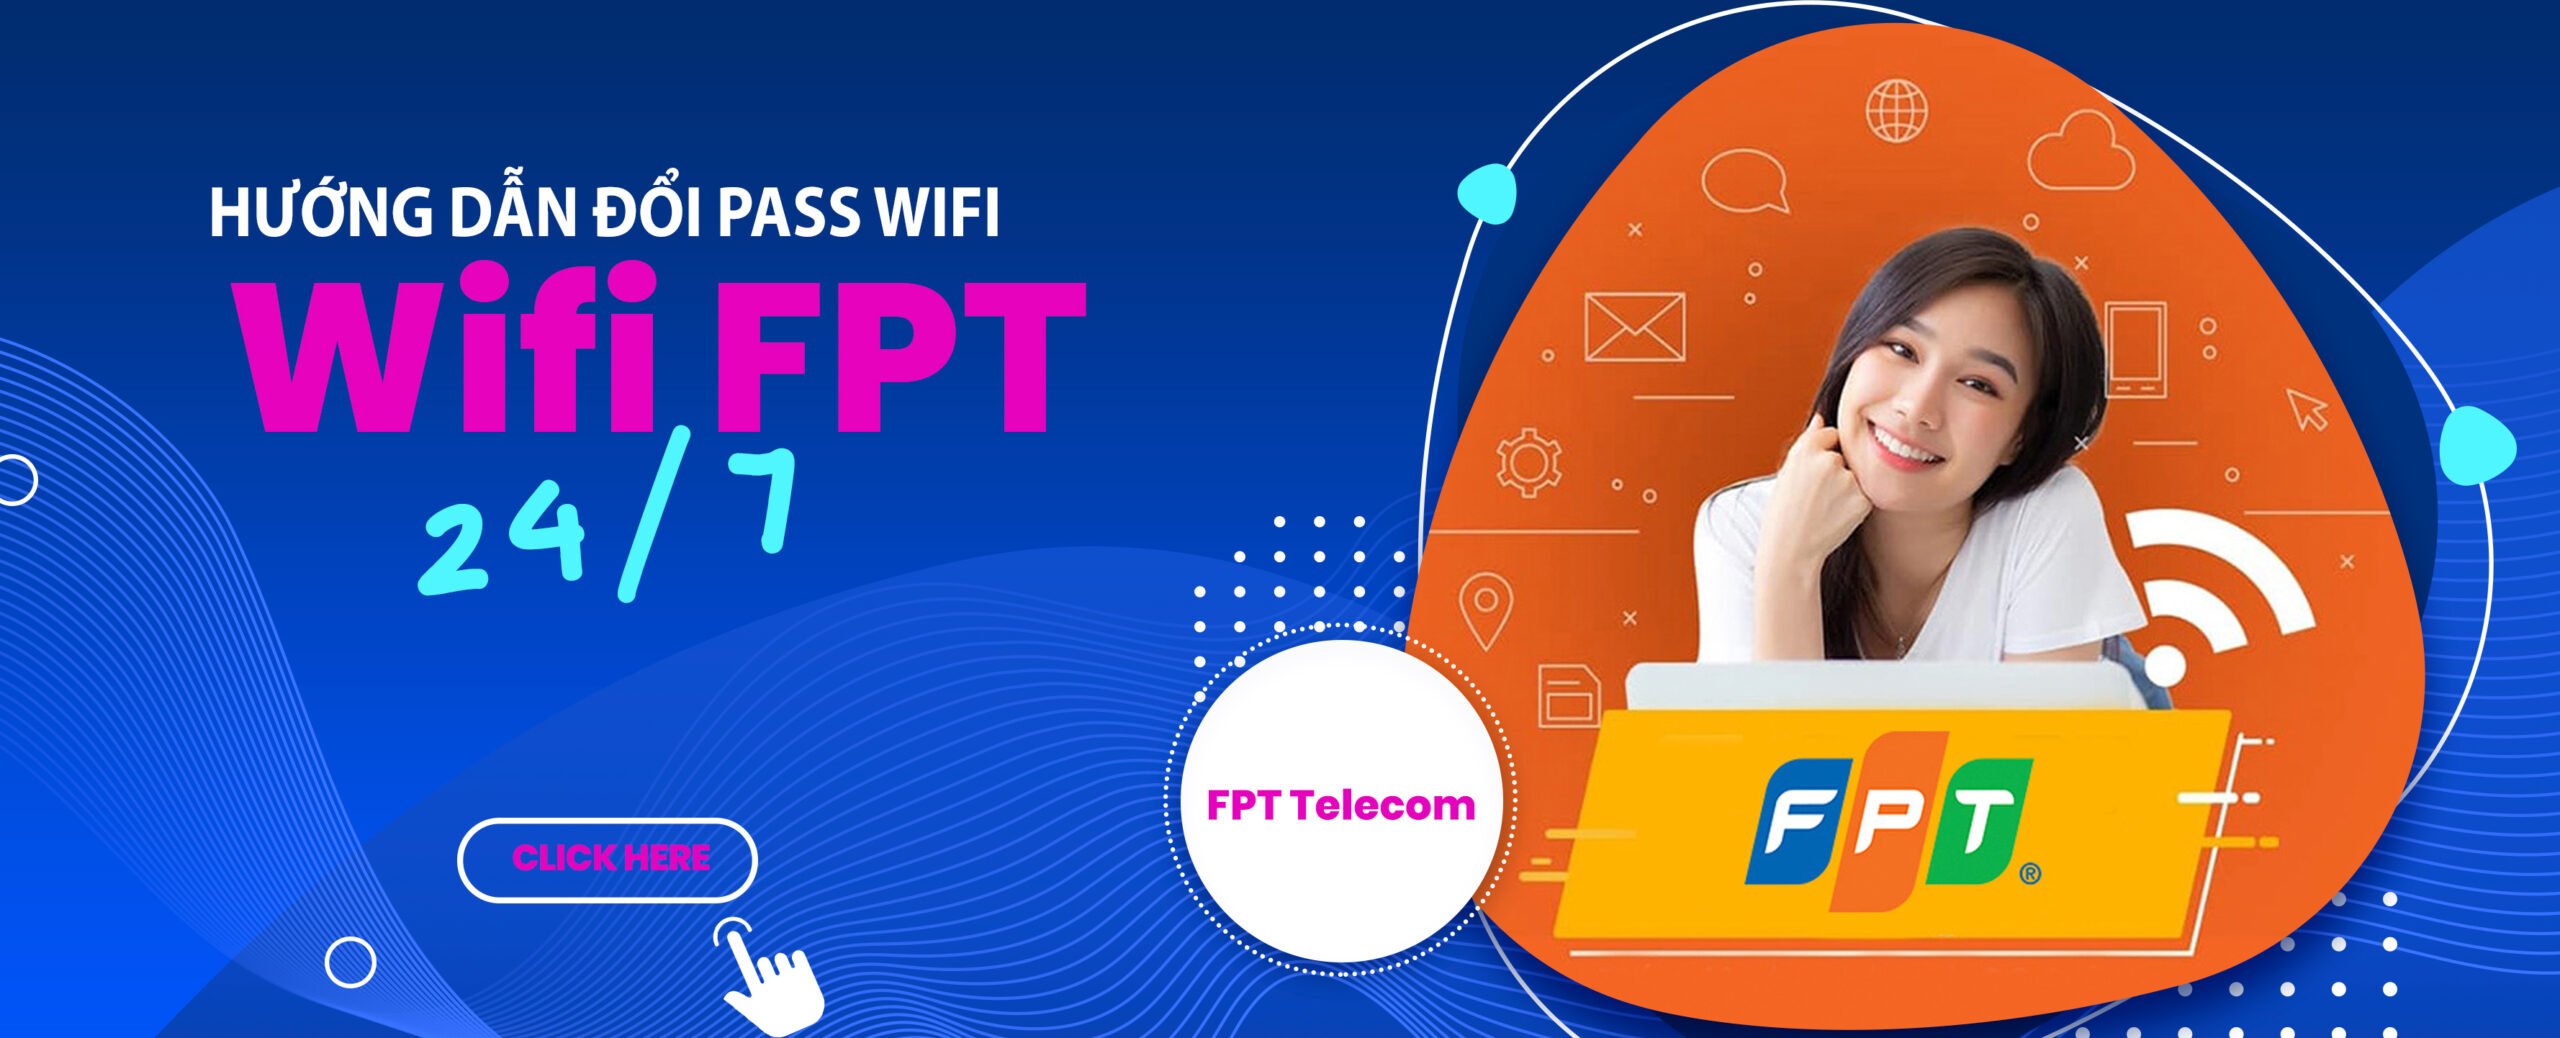 HƯớng dẫn đổi pass wifi FPT